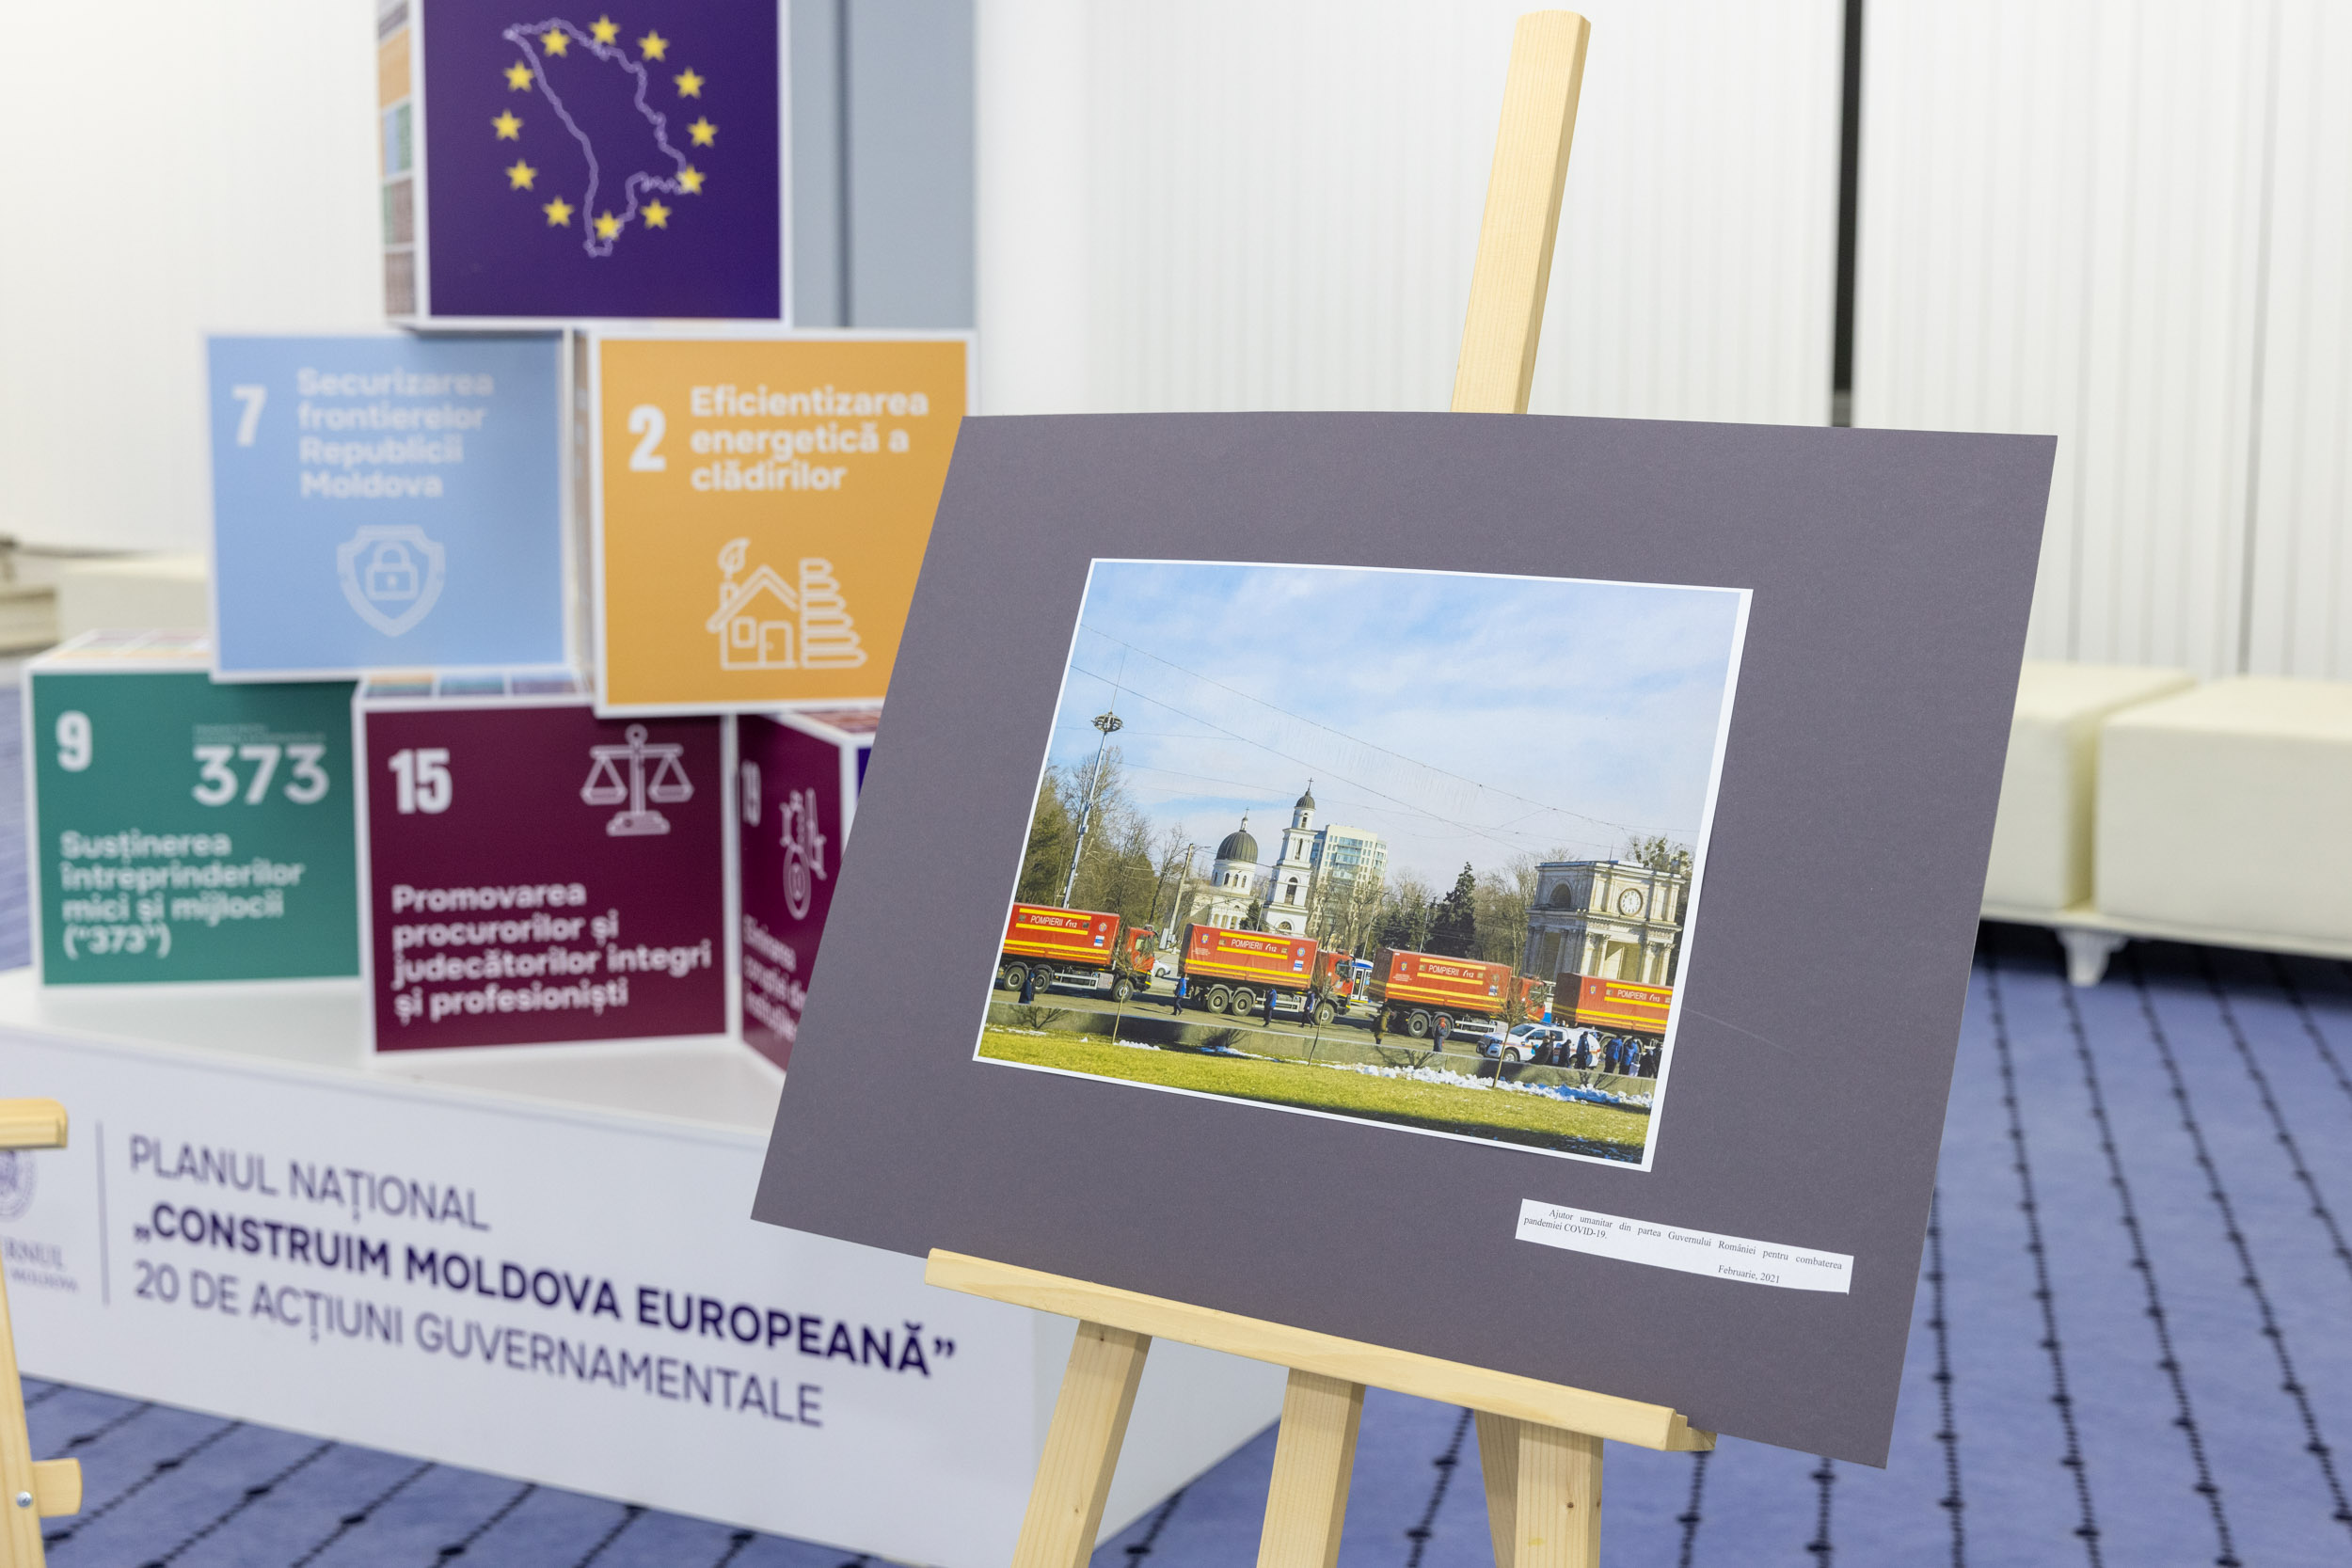 „Mulțumim, România!”: Cele mai importante proiecte finanțate de București în Moldova, expuse în imagini, la Guvern